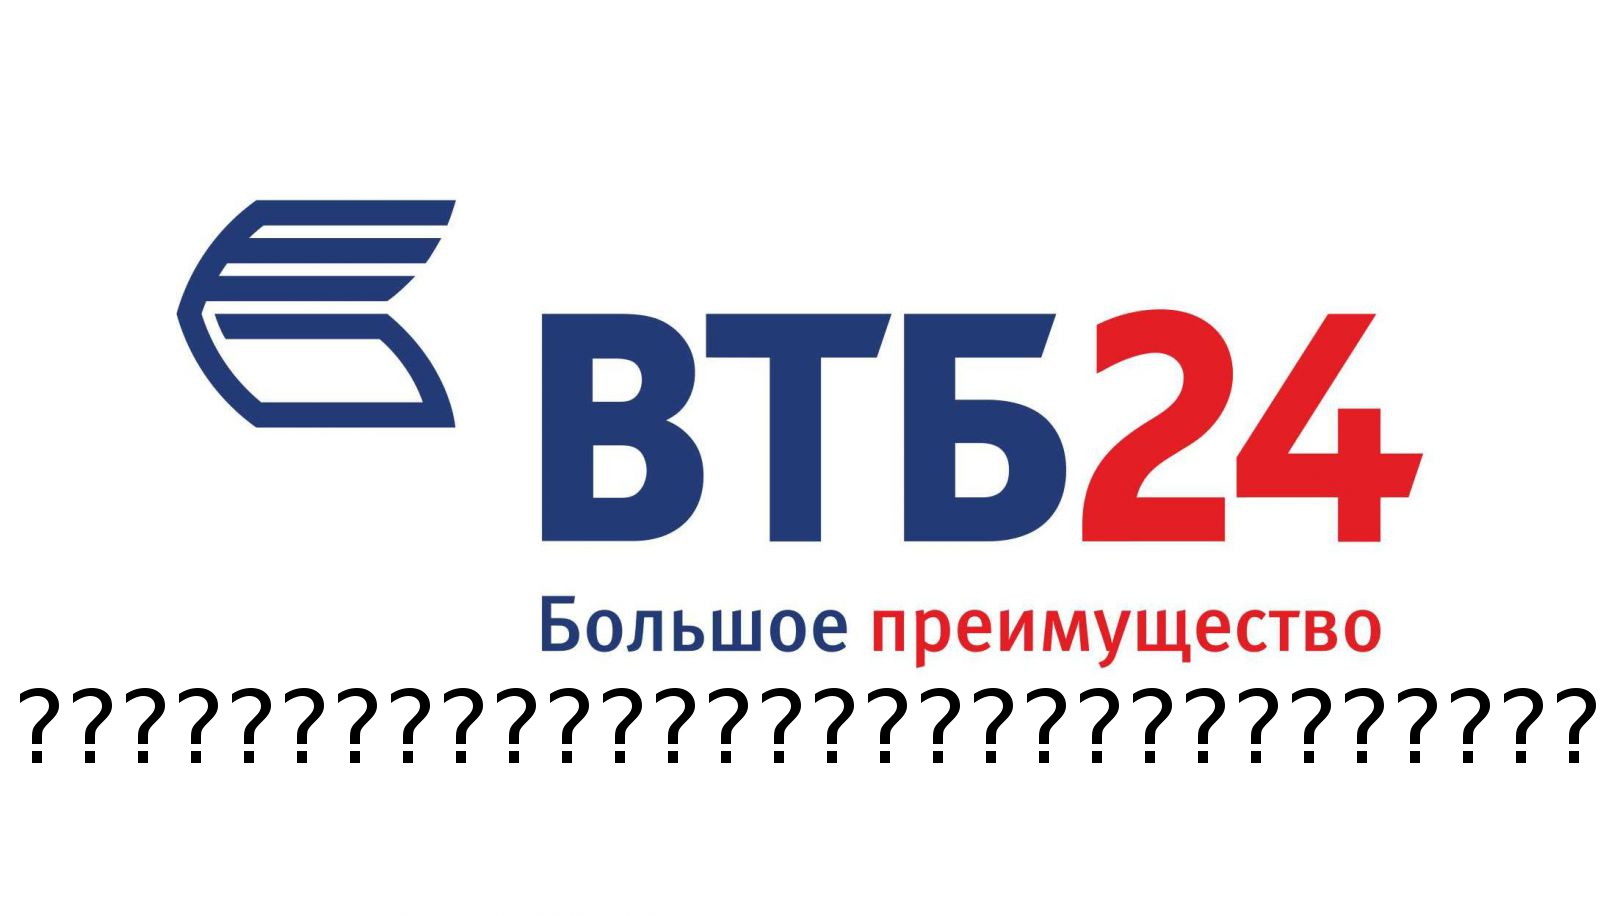 Втб телефон горячей линии спб. ВТБ 24 реклама. ВТБ поддержка. ВТБ факторинг логотип. ВТБ эмблема на прозрачном фоне.